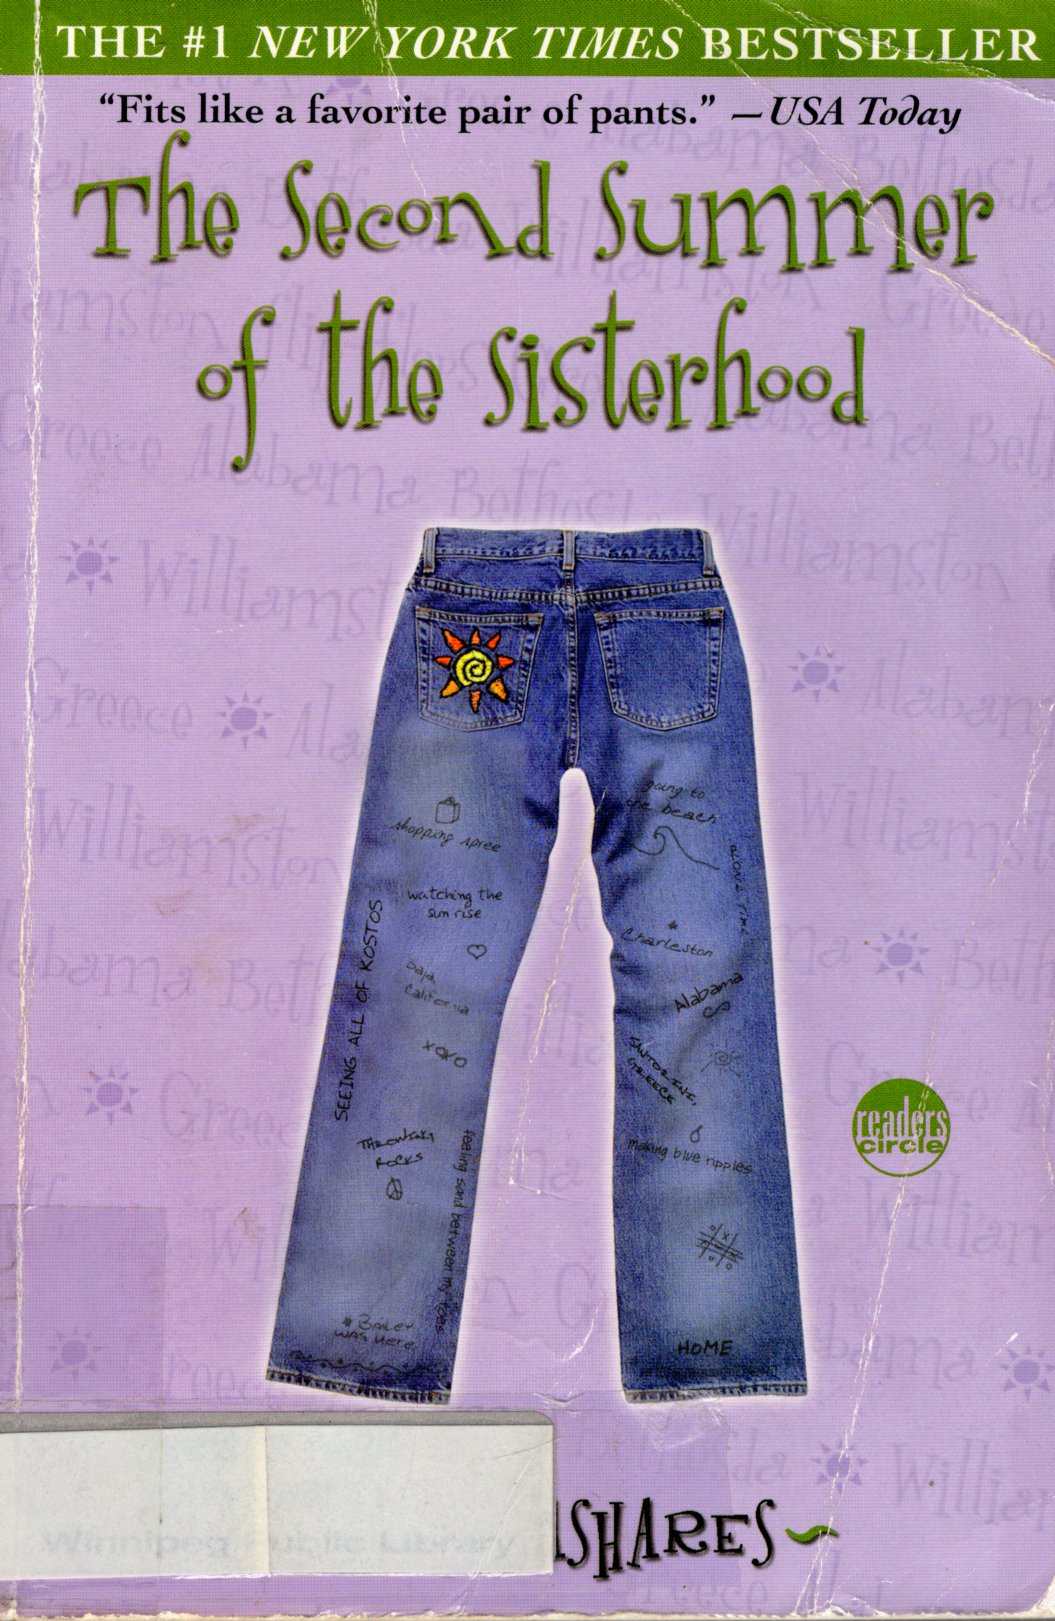 The Second Summer Of The Sisterhood by Ann Brashares te koop op hetbookcafe.nl